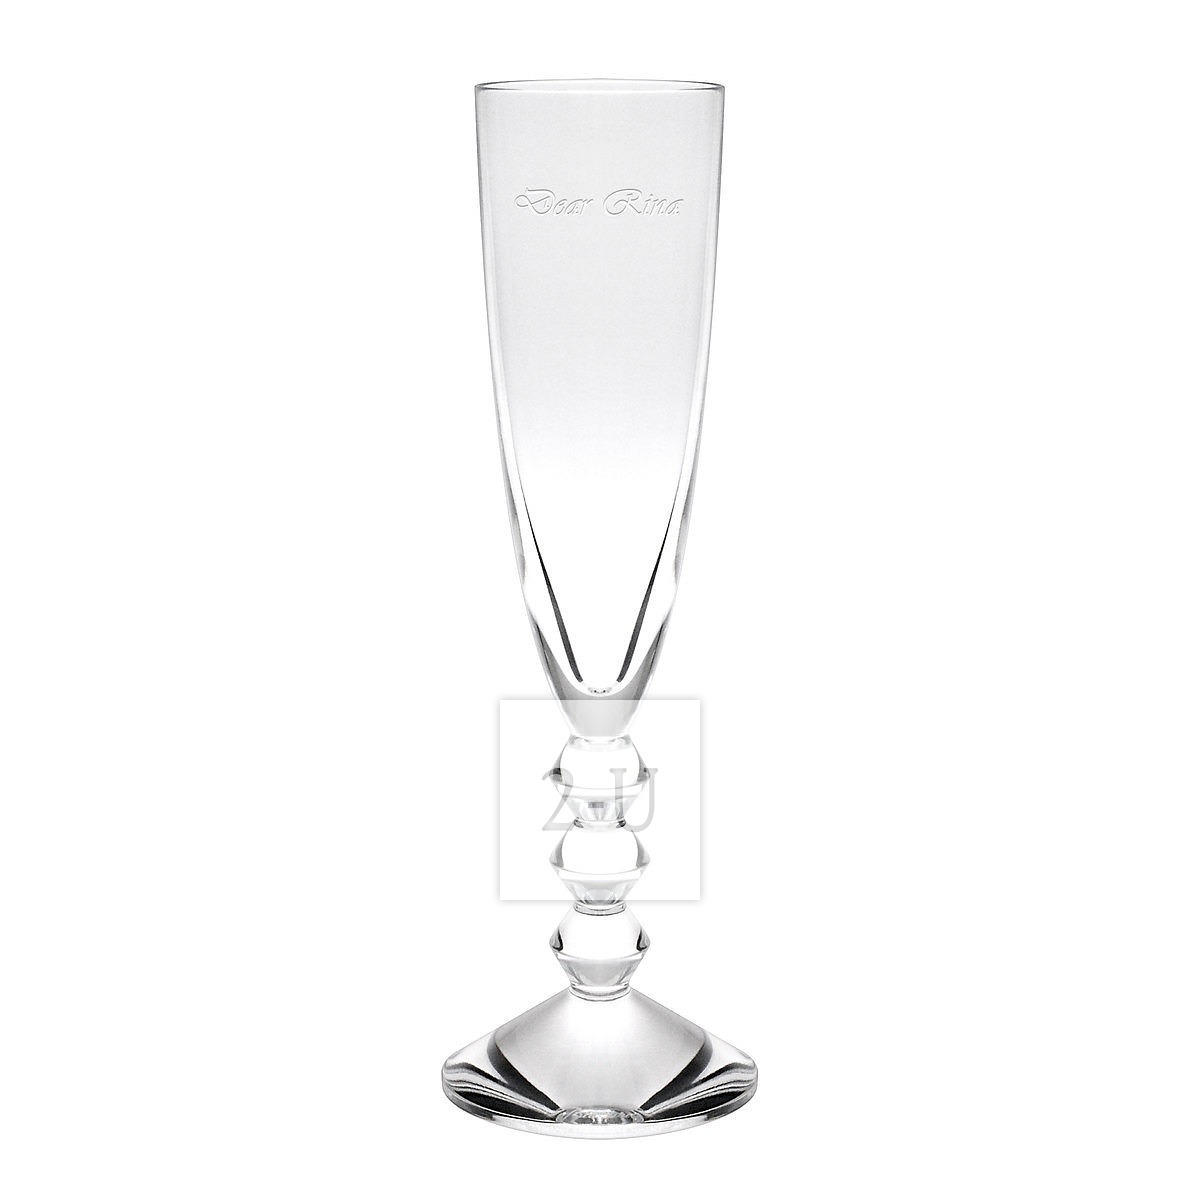 法国巴卡拉 Baccarat Vega 系列水晶玻璃香槟杯